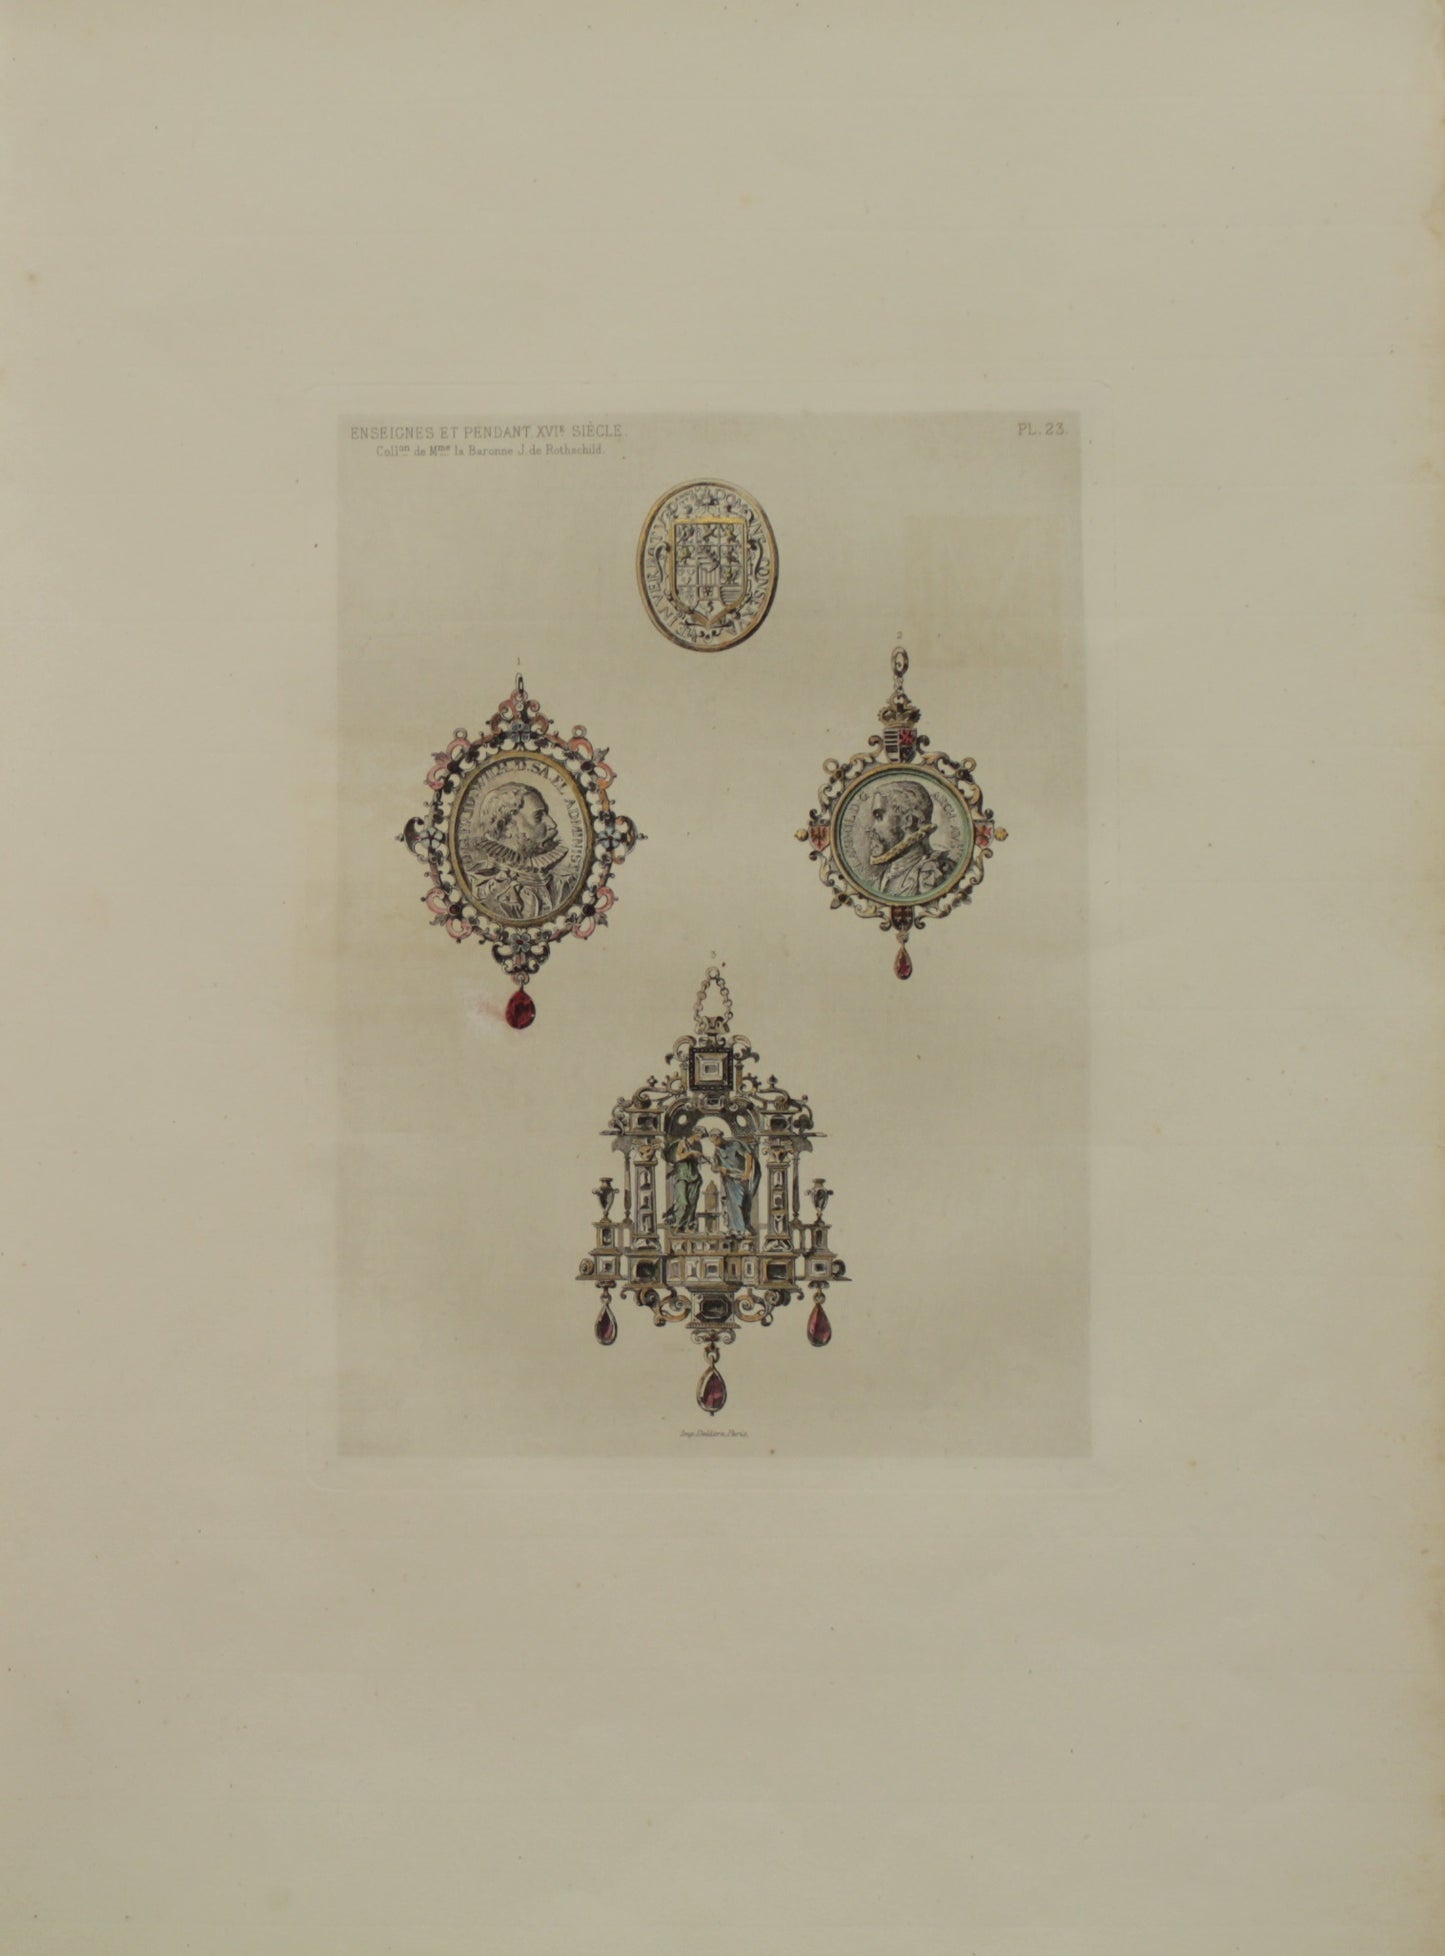 Decorator, Les Collections, Celebres, D'Oeuvres D'Art, Ensignes Et Pendant XVI Siecle, From the Collection De M la Baronne J de Rothschild, Plate 23, 1864